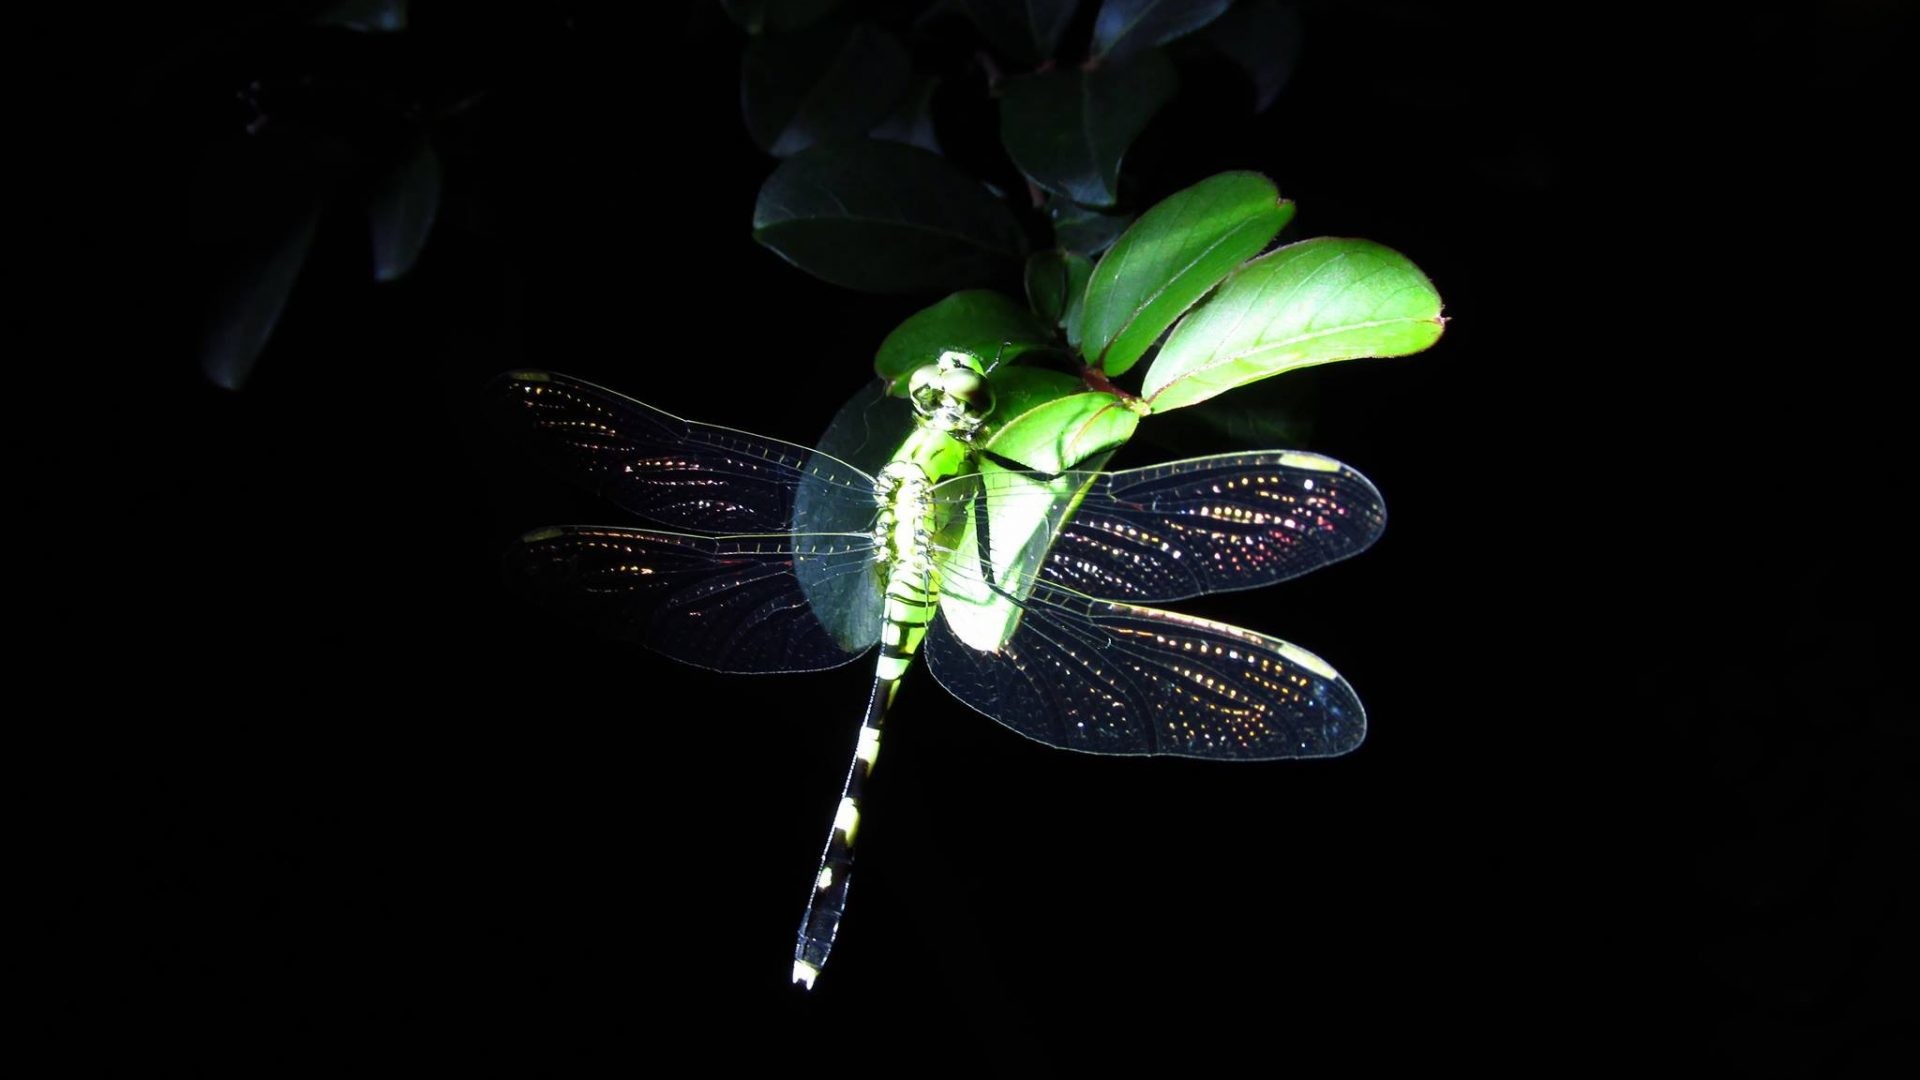 40 Dragonfly iPhone Wallpapers  WallpaperSafari